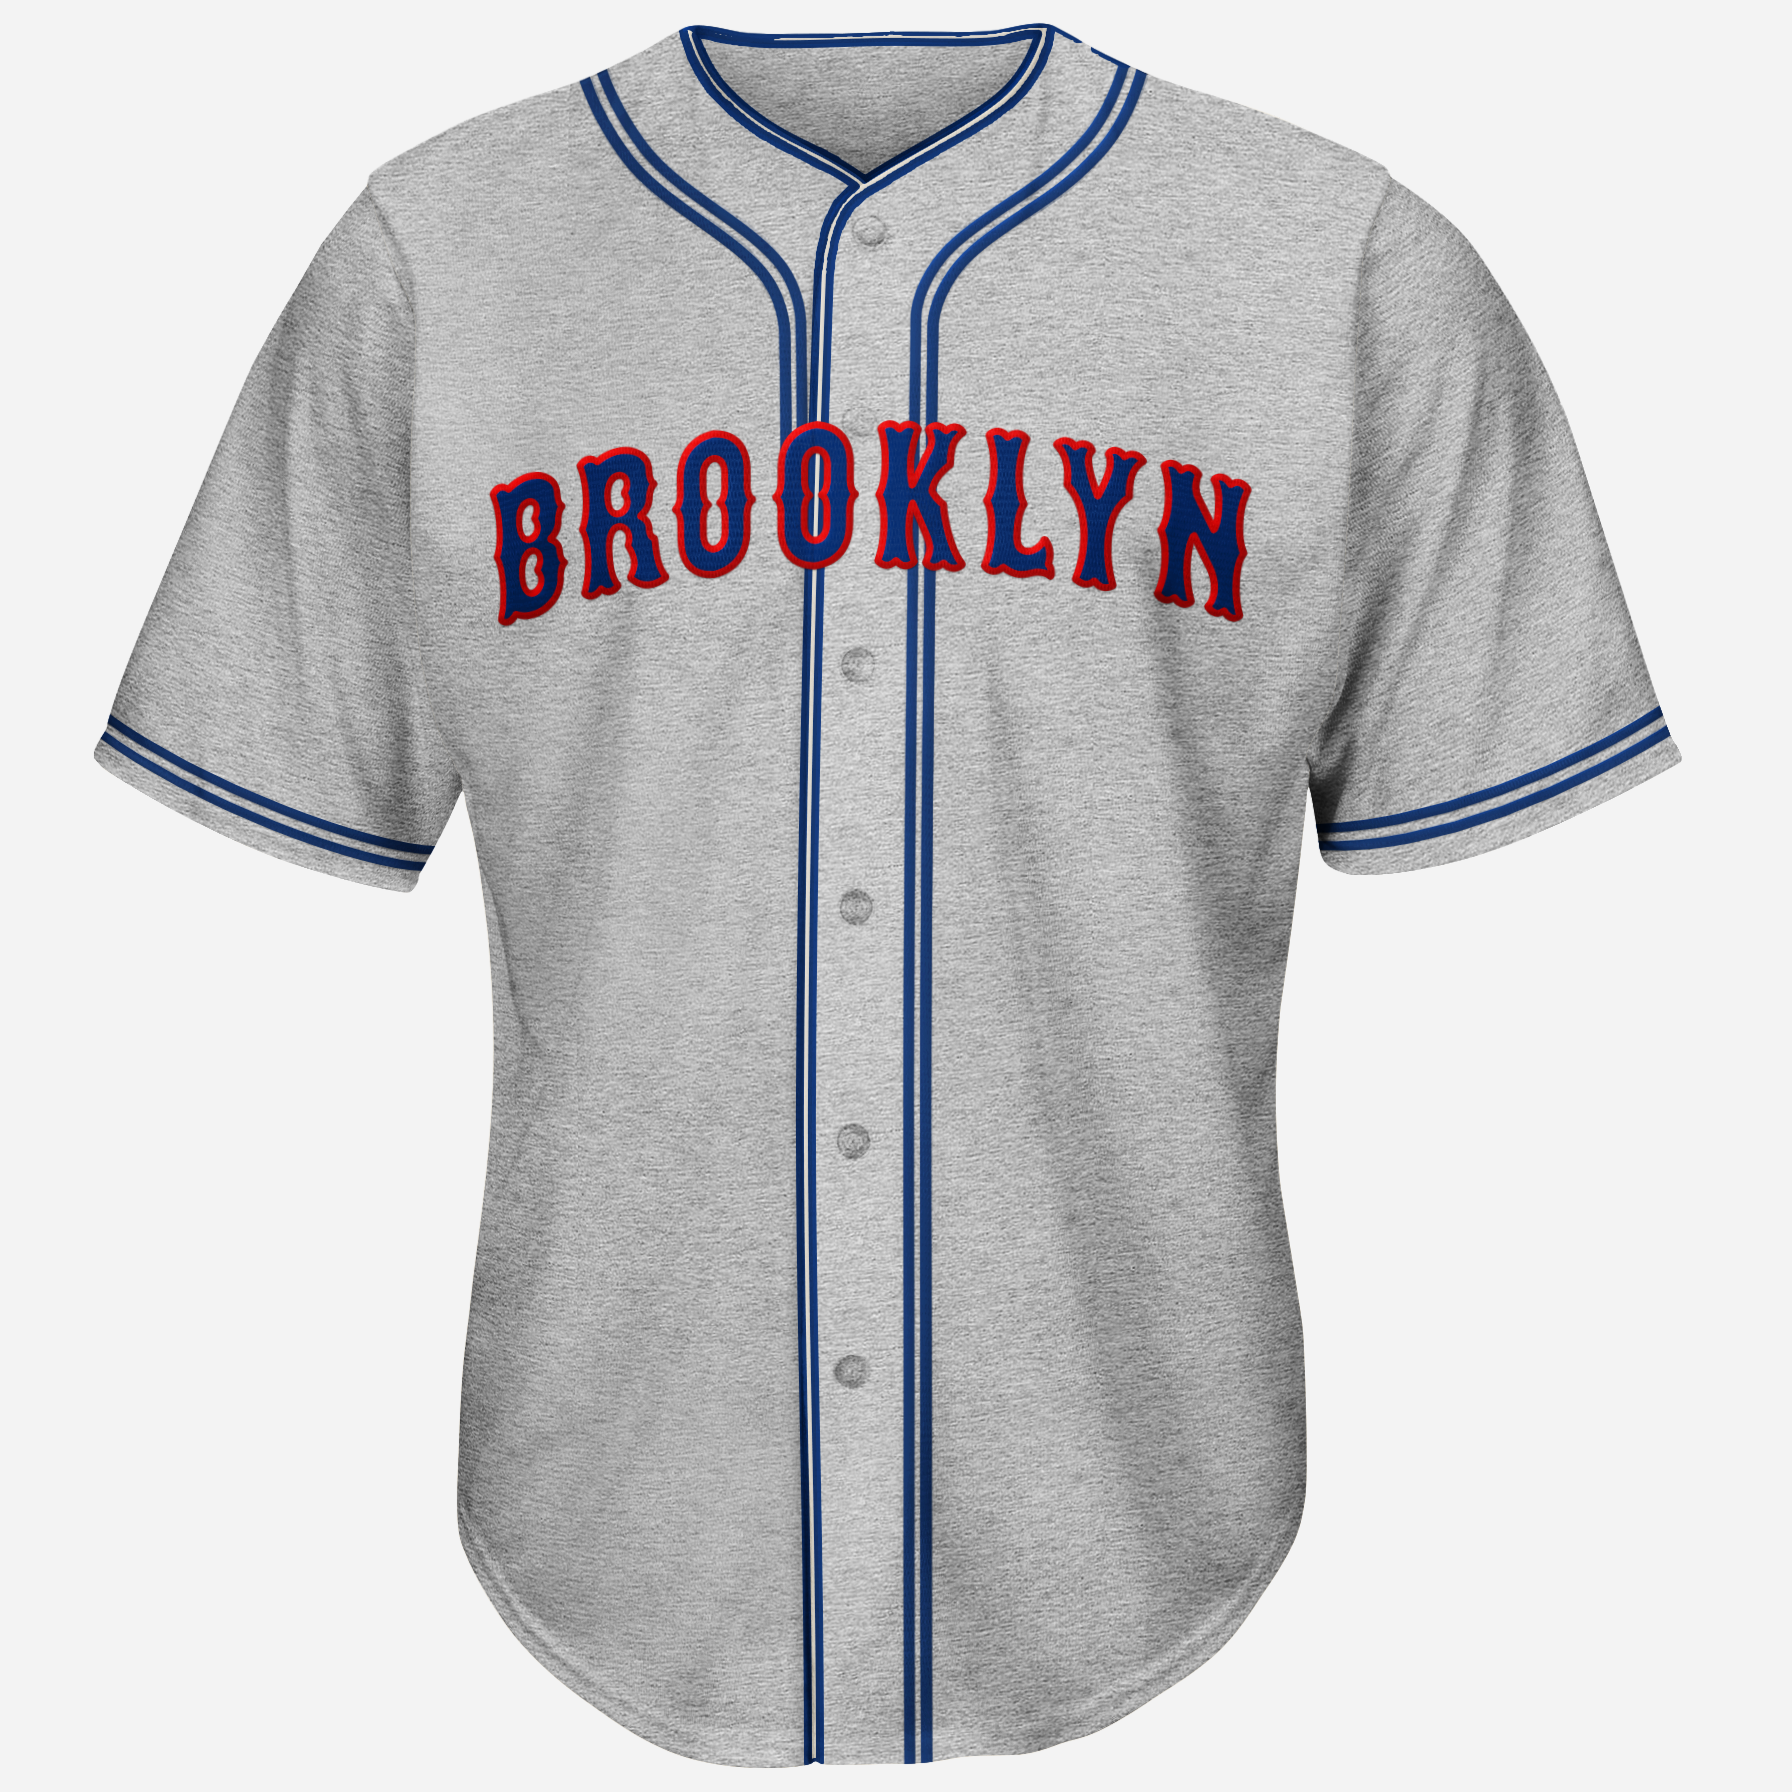 1936 brooklyn dodgers jersey